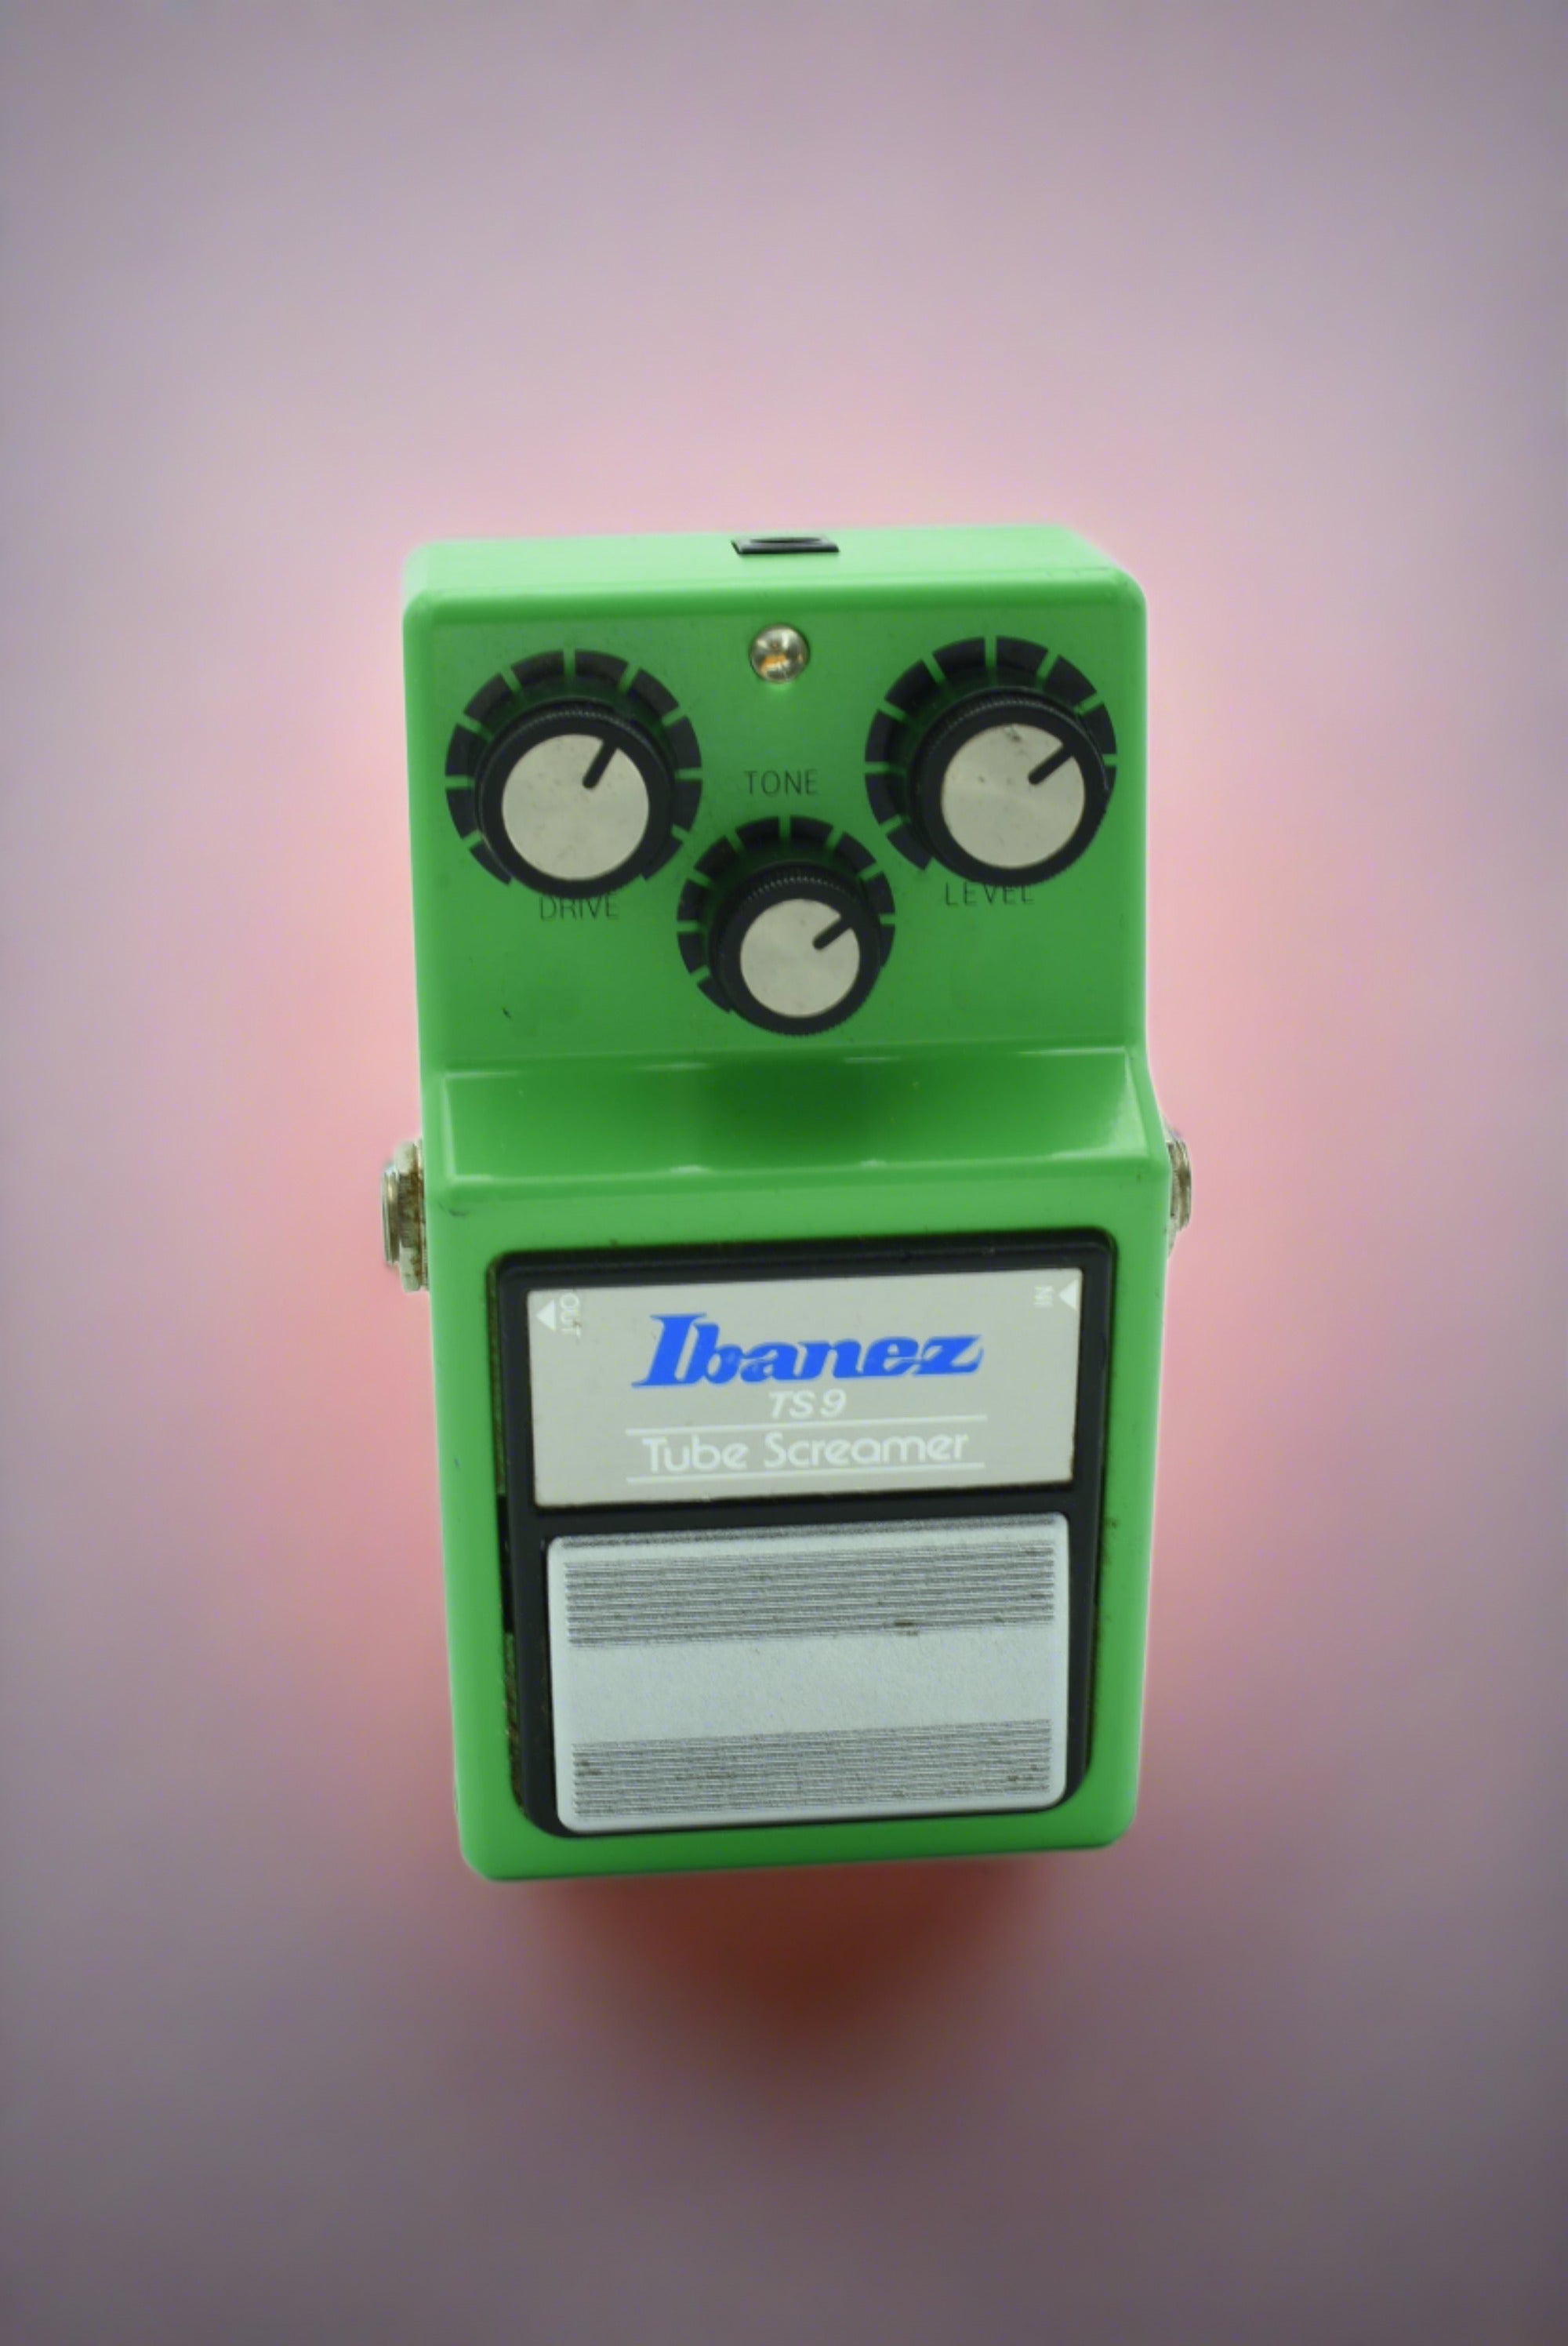 Ibanez TS9 Tube Screamer - 配信機器・PA機器・レコーディング機器